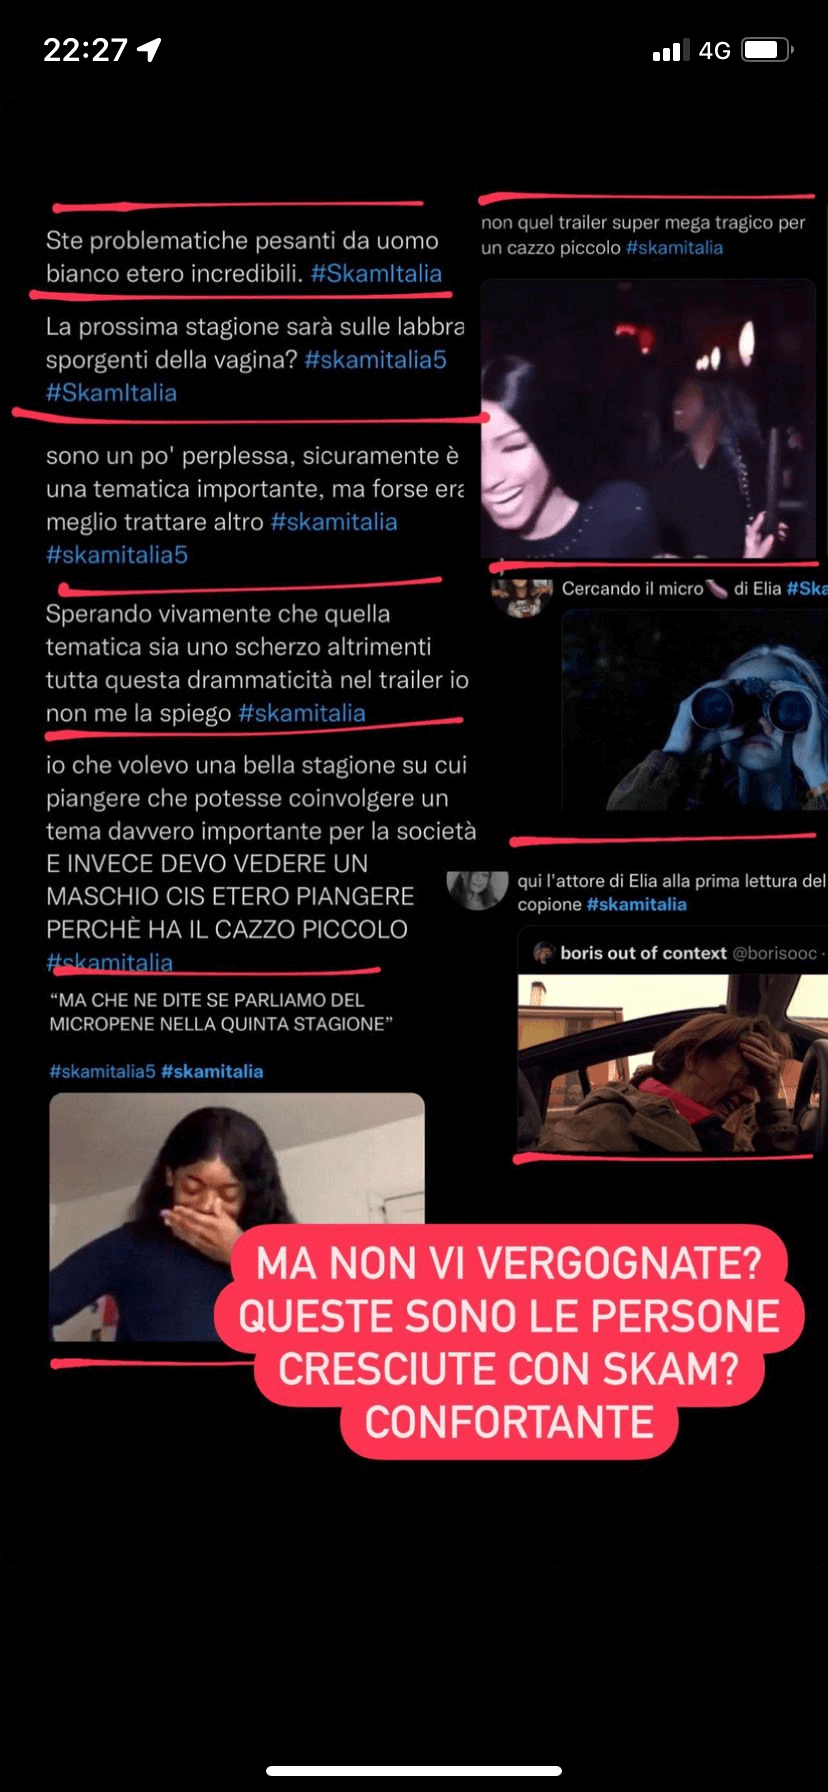 Skam Italia 5, Pietro Turano replica sul micropene di Elia: "Ma non vi vergognate?" - Skam Italia 5 - Gay.it